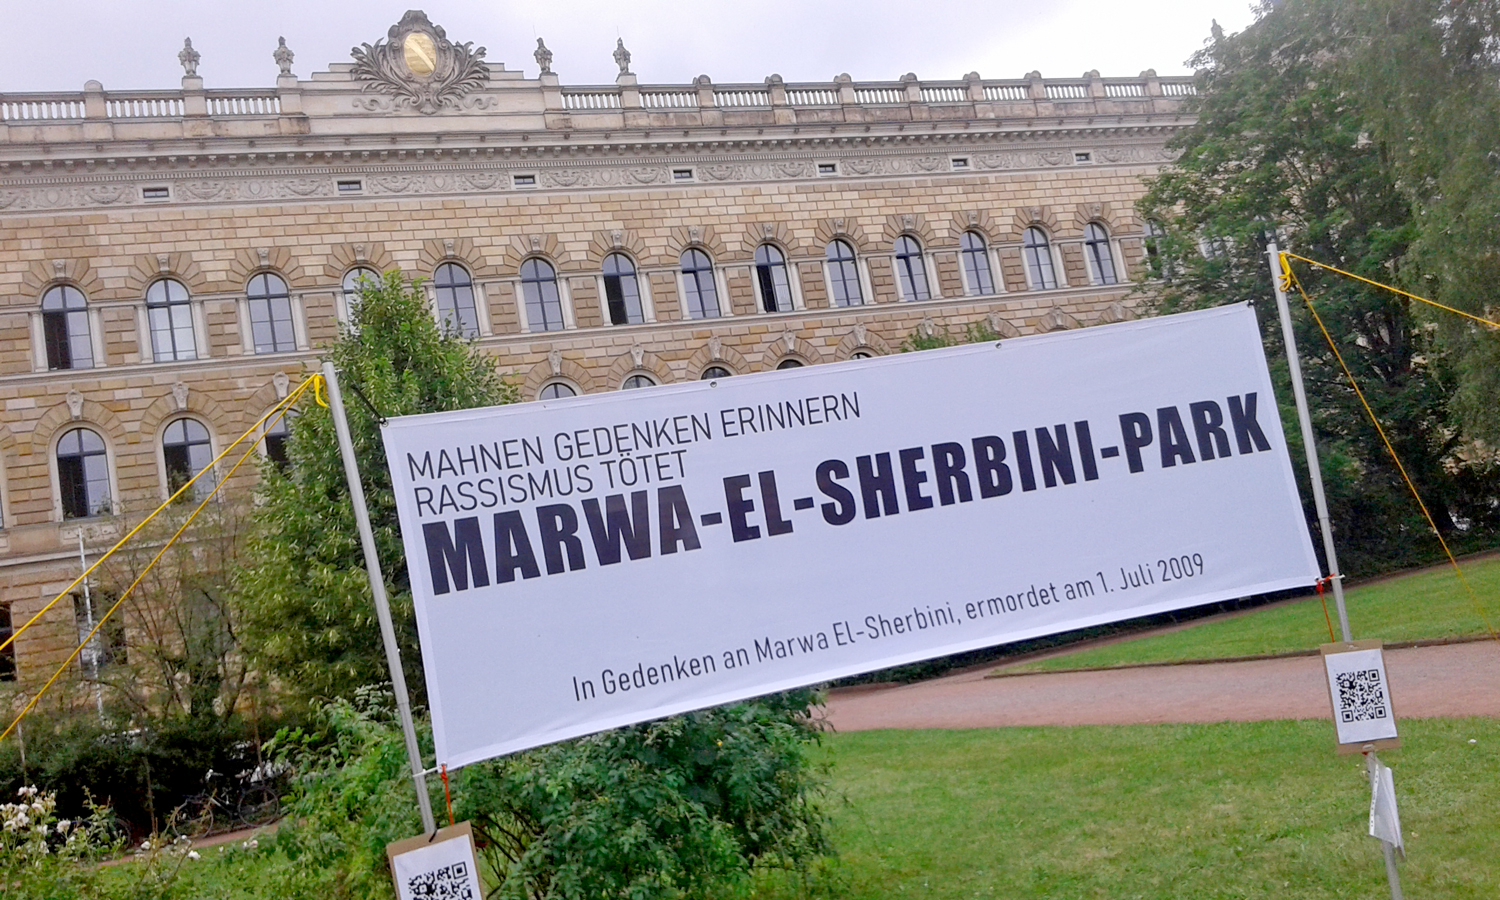 Marwa-El-Sherbini-Park